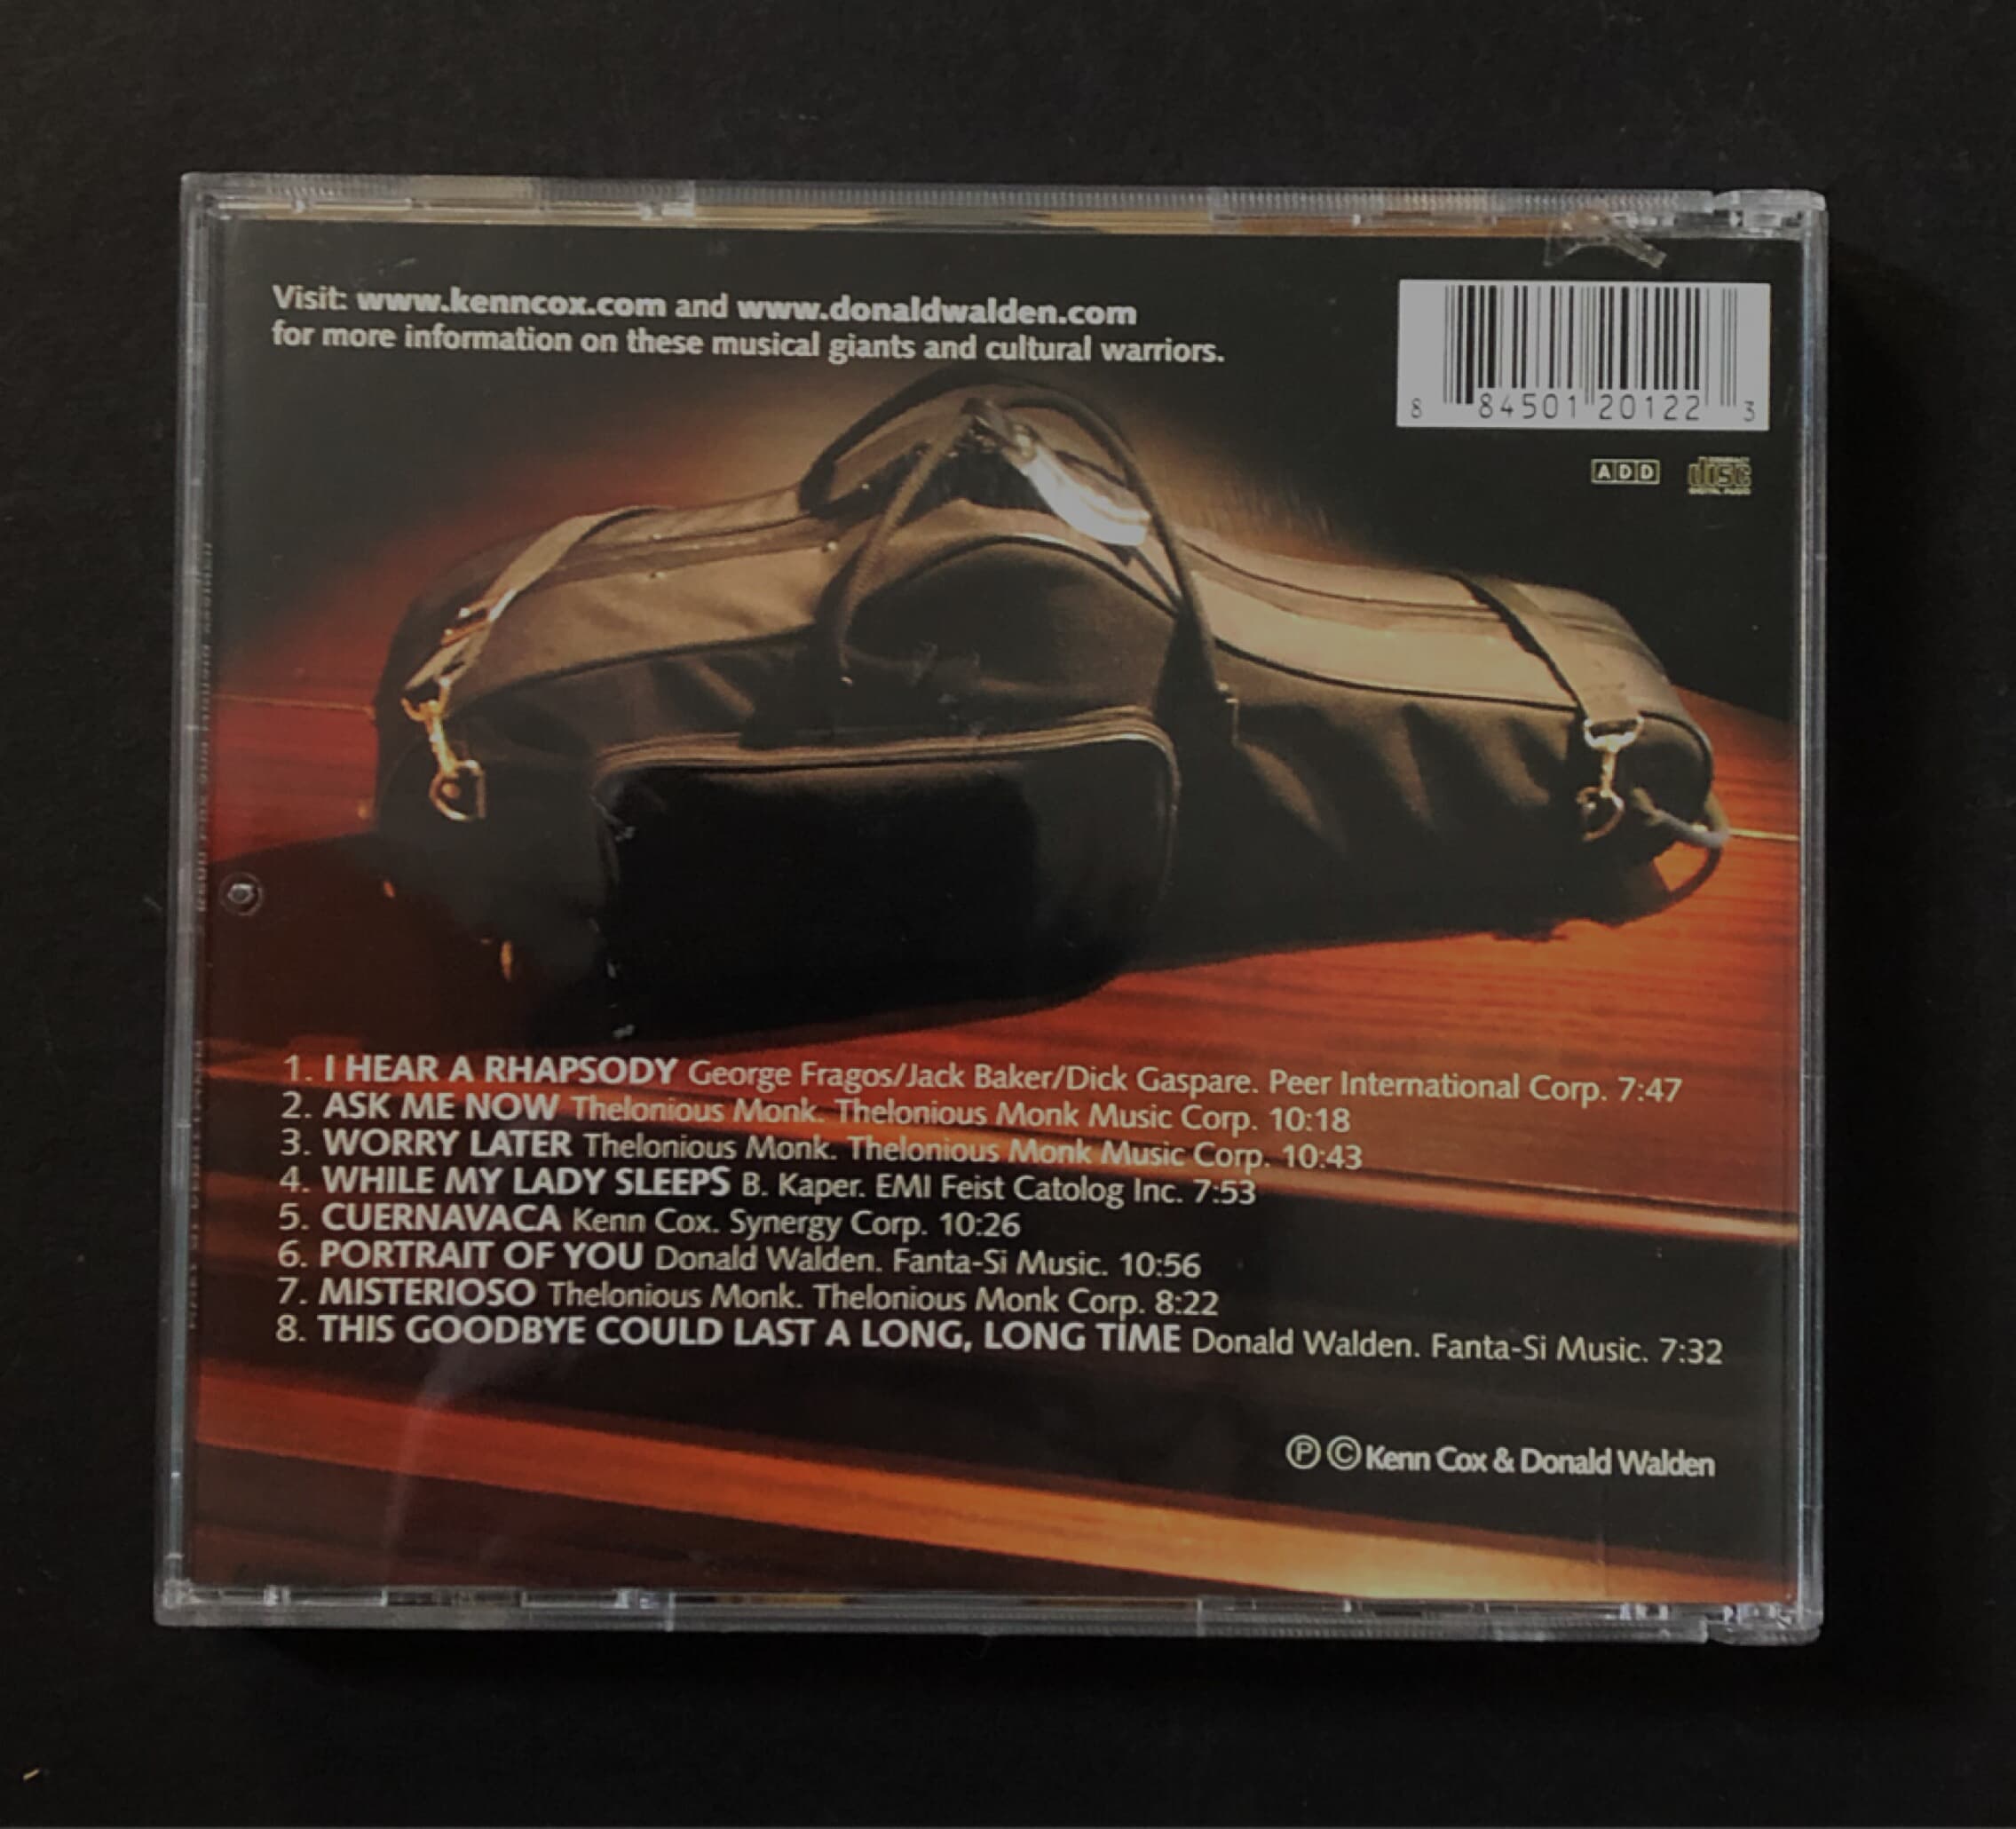 [CD] 수입반 KENN COX & DONALD WALDEN - DUET AT KERRYTOWN  (US발매)